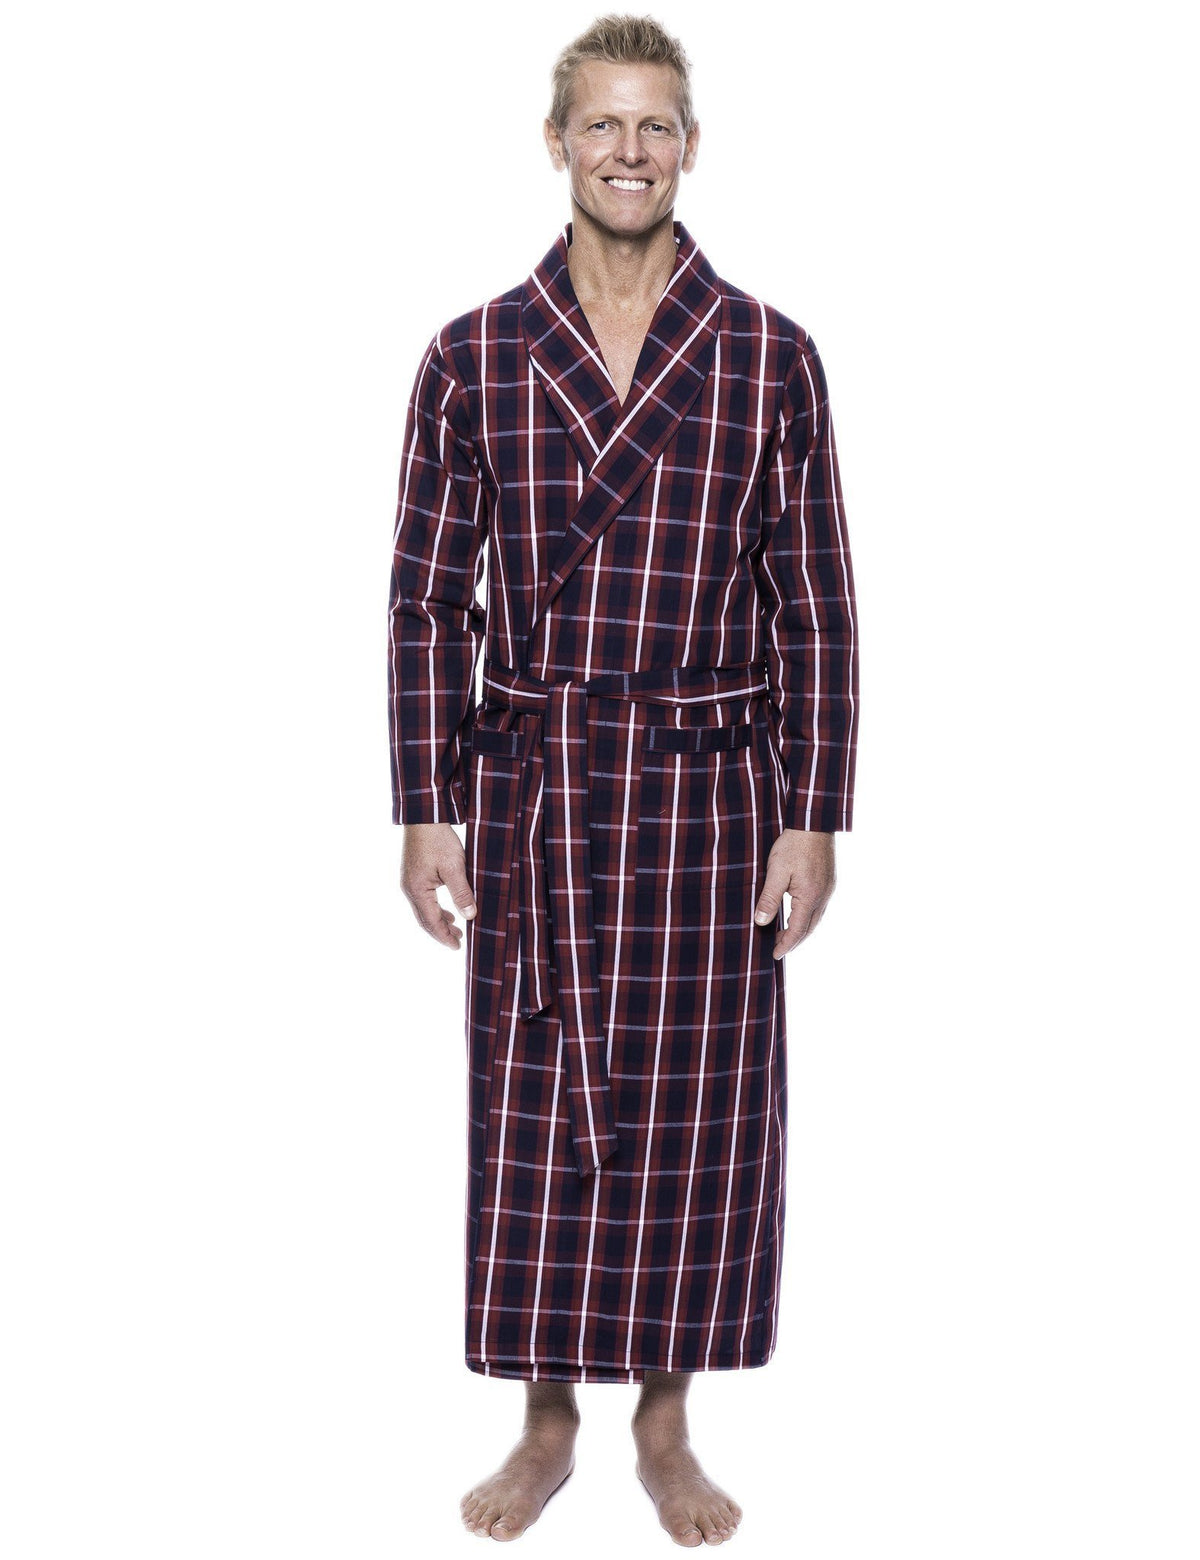 Men's 100% Woven Cotton Robe - Patriotic Plaid